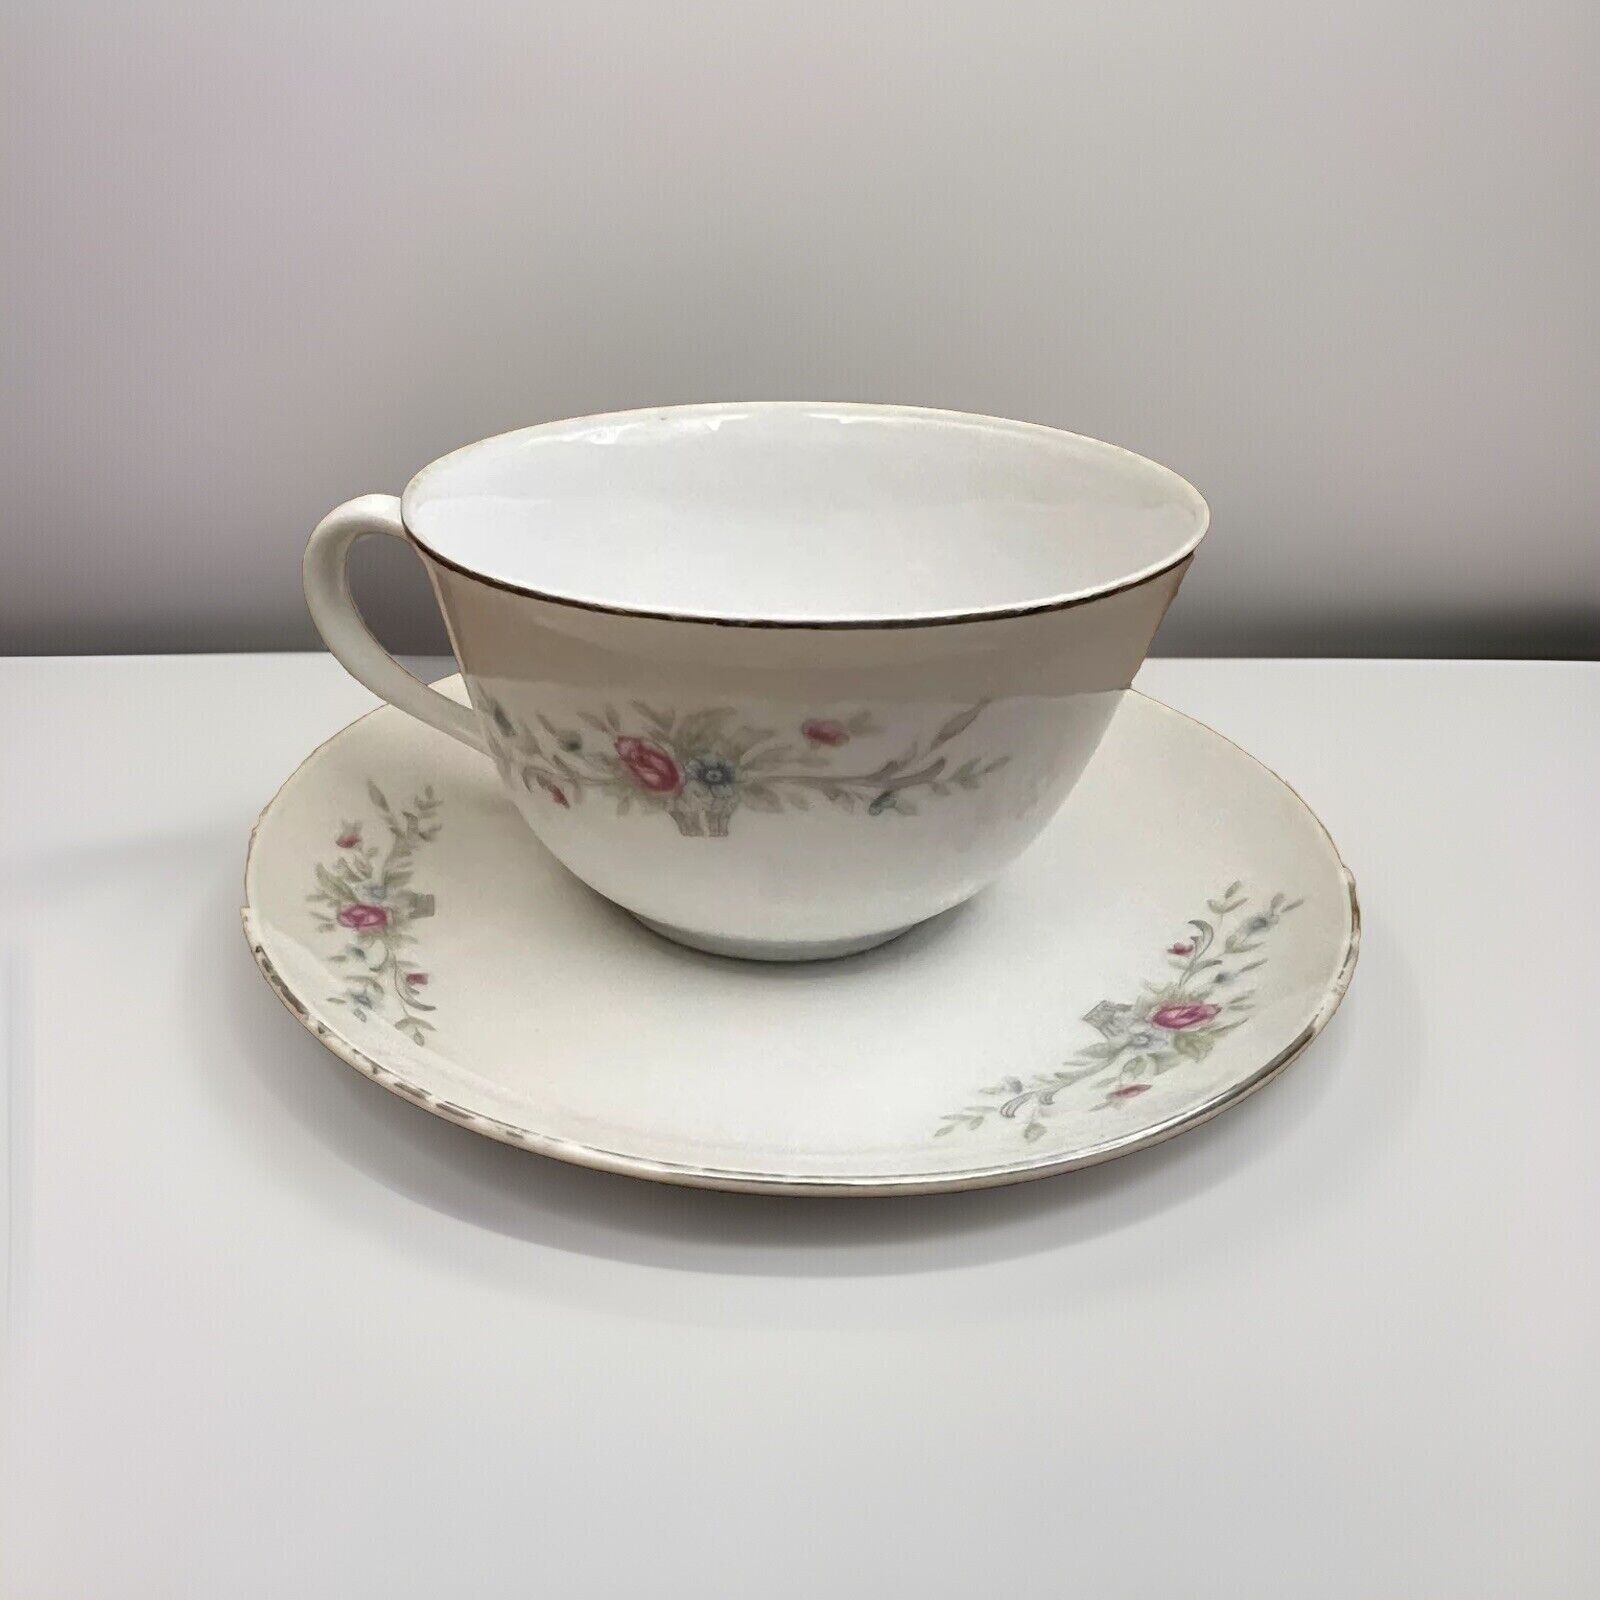 Vintage Florenteen Tea Set Cup & Saucer White Pink Blue Flowers VTG RARE